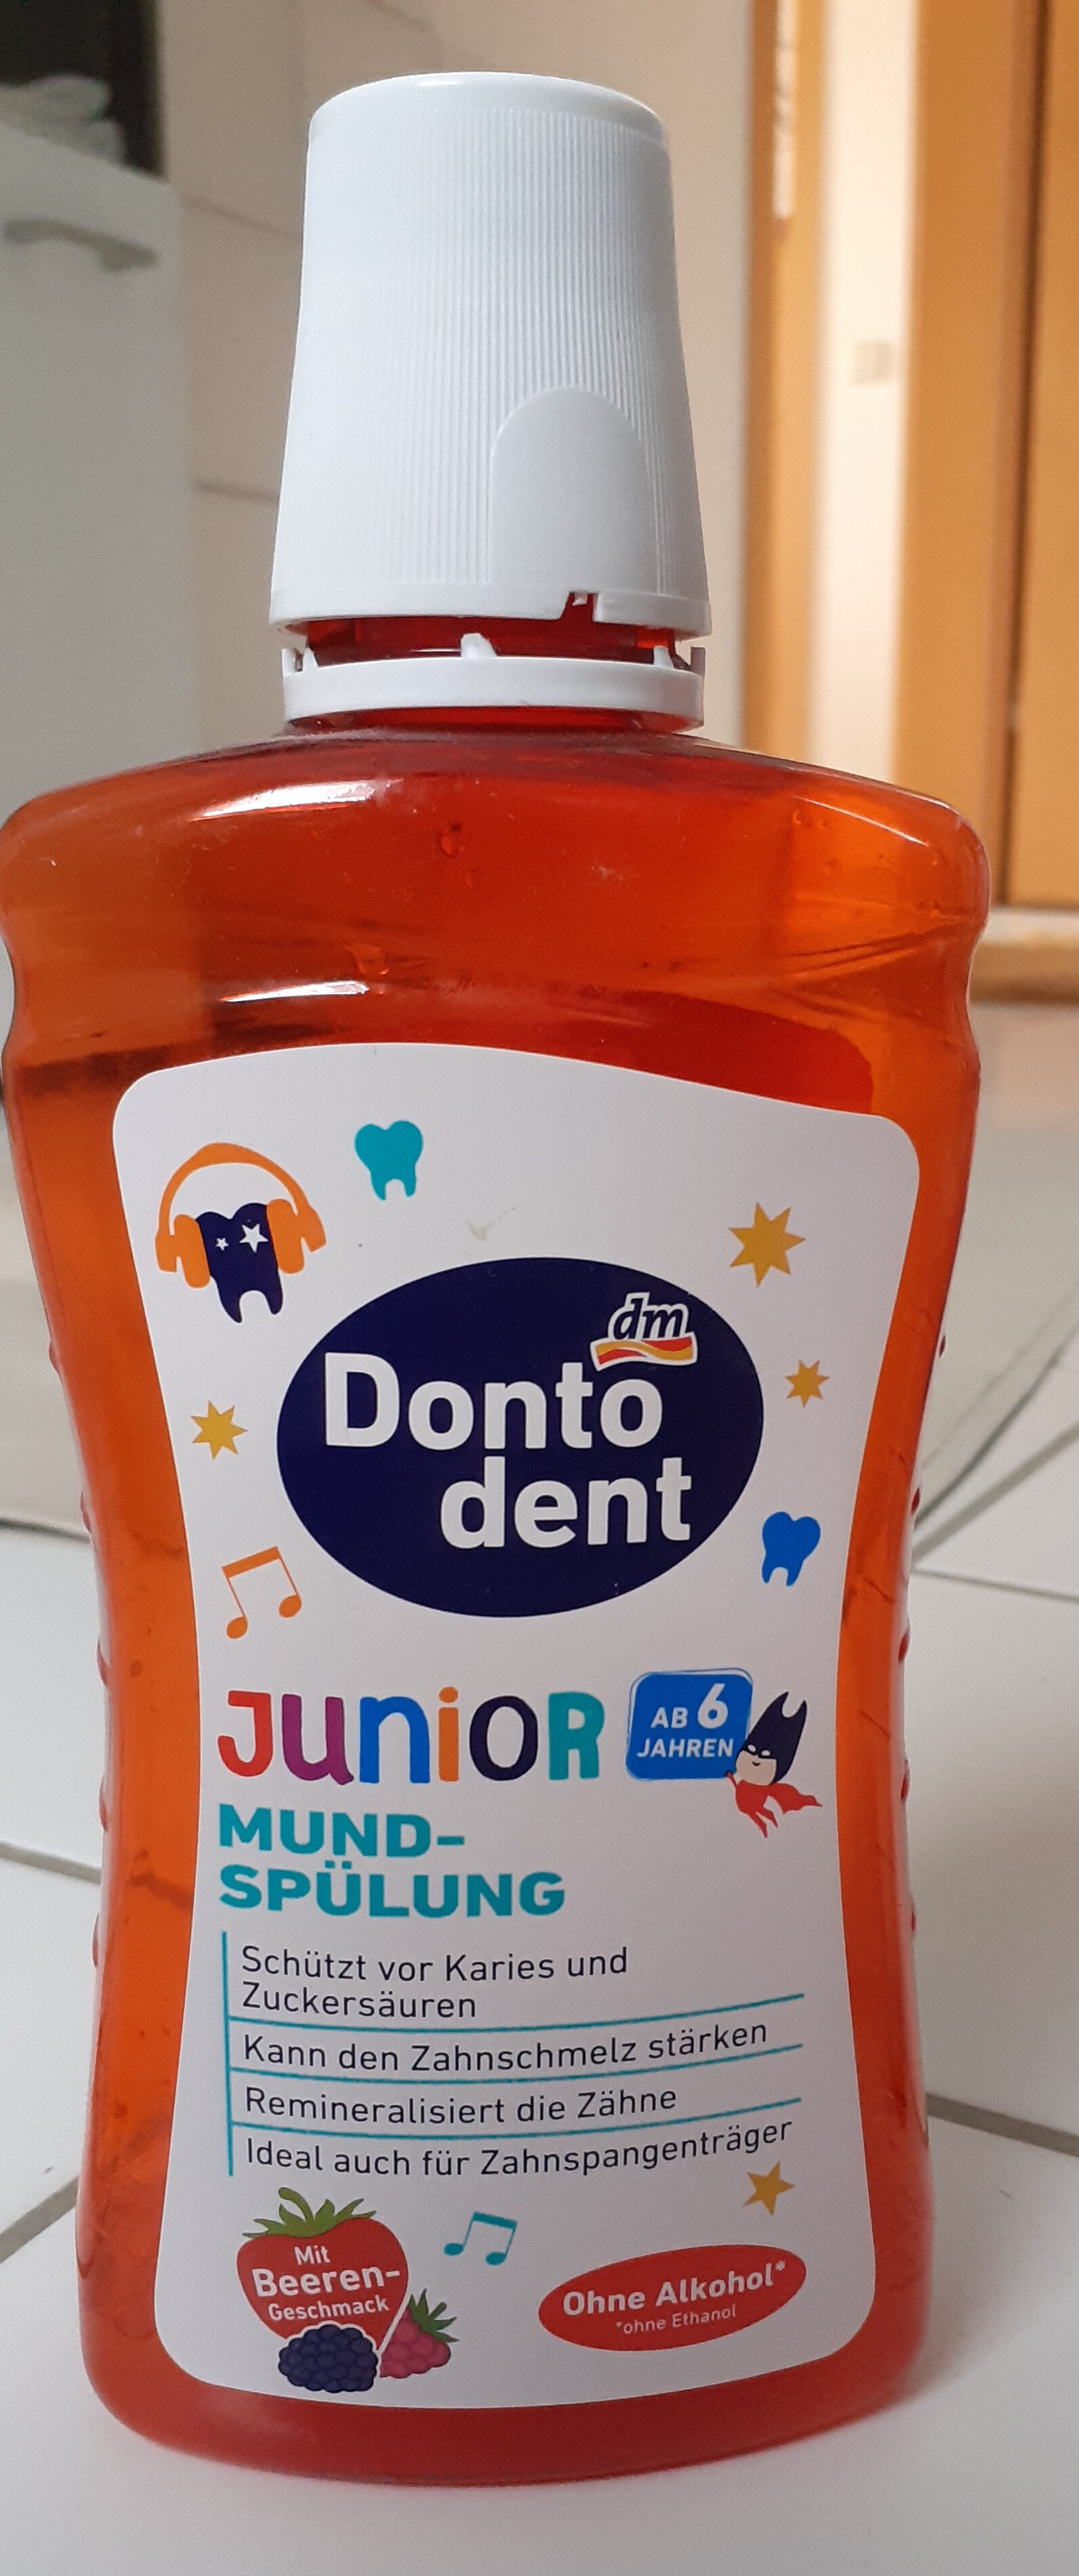 Junior - Produkt - de